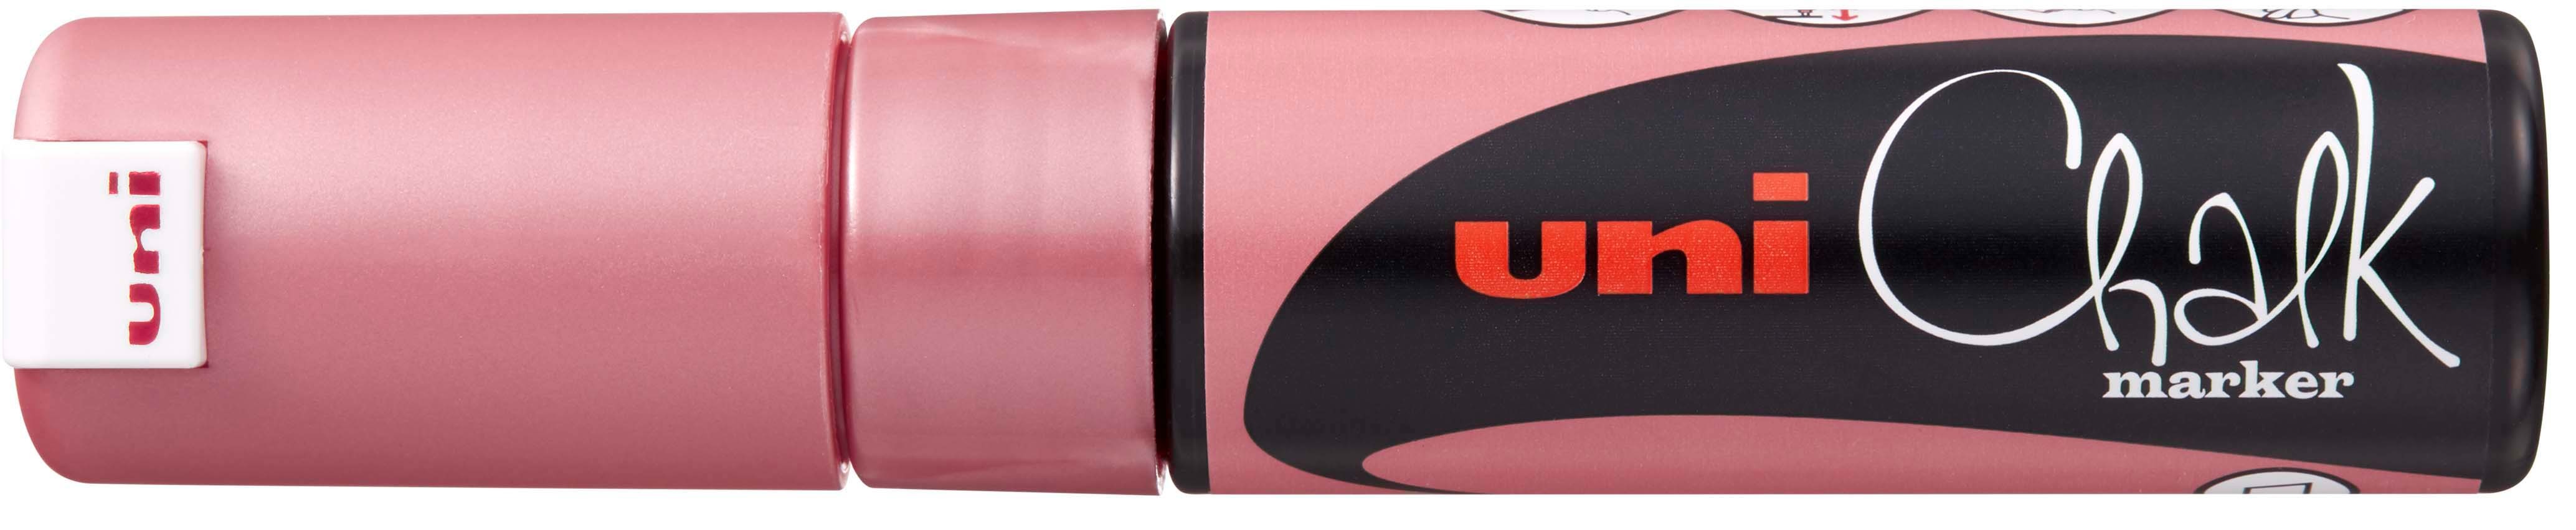 UNI-BALL Chalk Marker 8mm PWE-8K METALLIC RED Metallic rouge